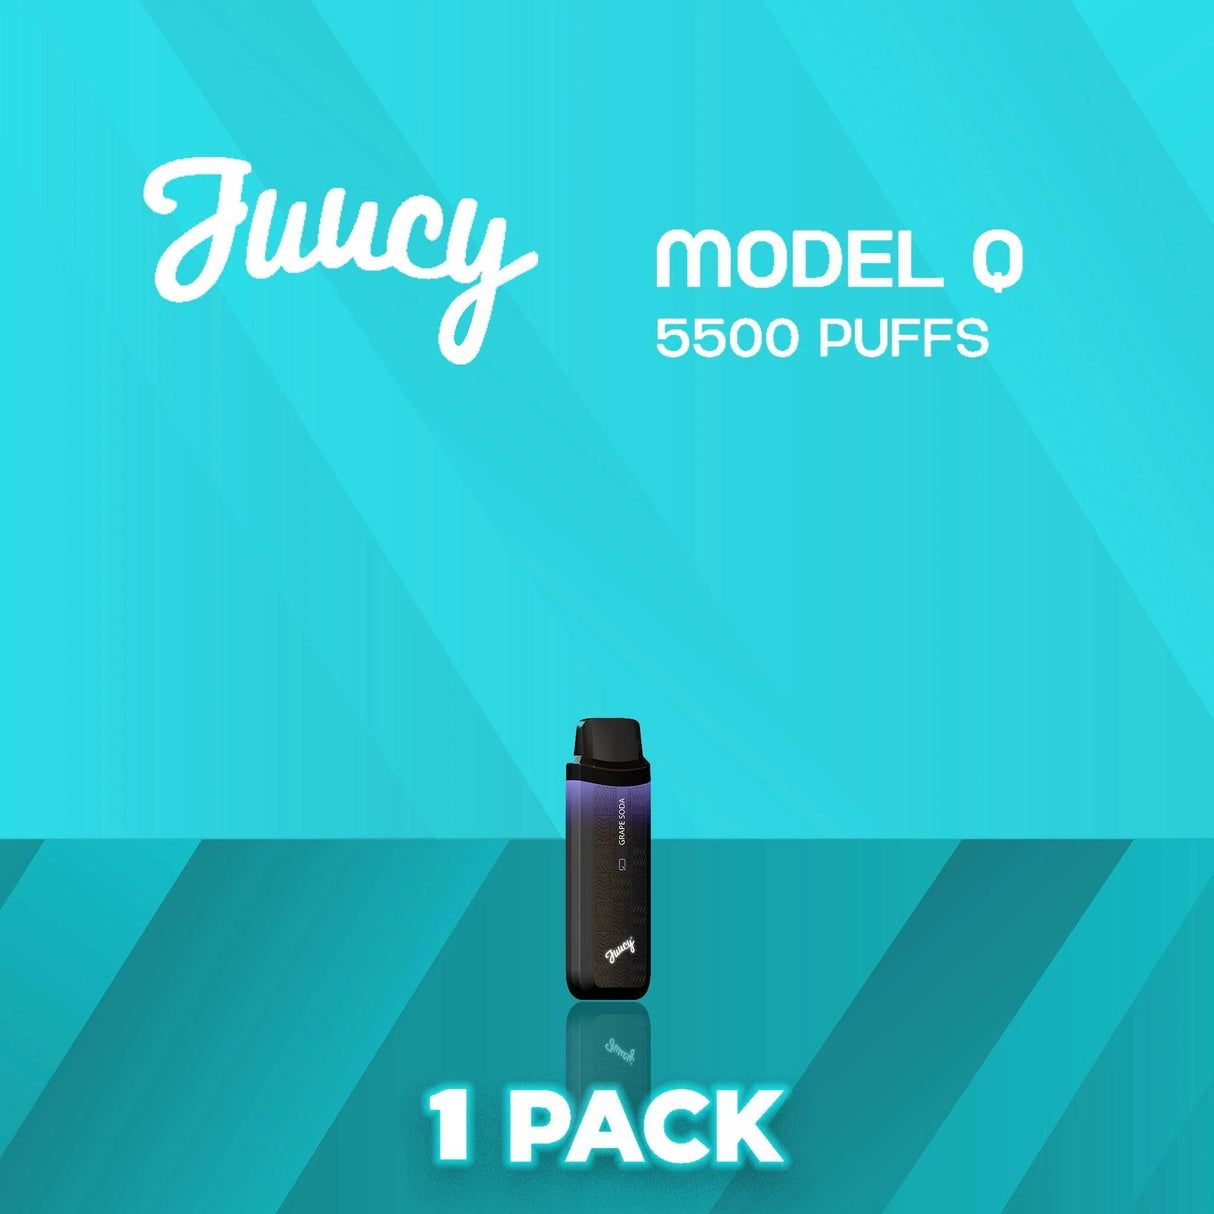 Juucy Model Q Flavor - Disposable Vape